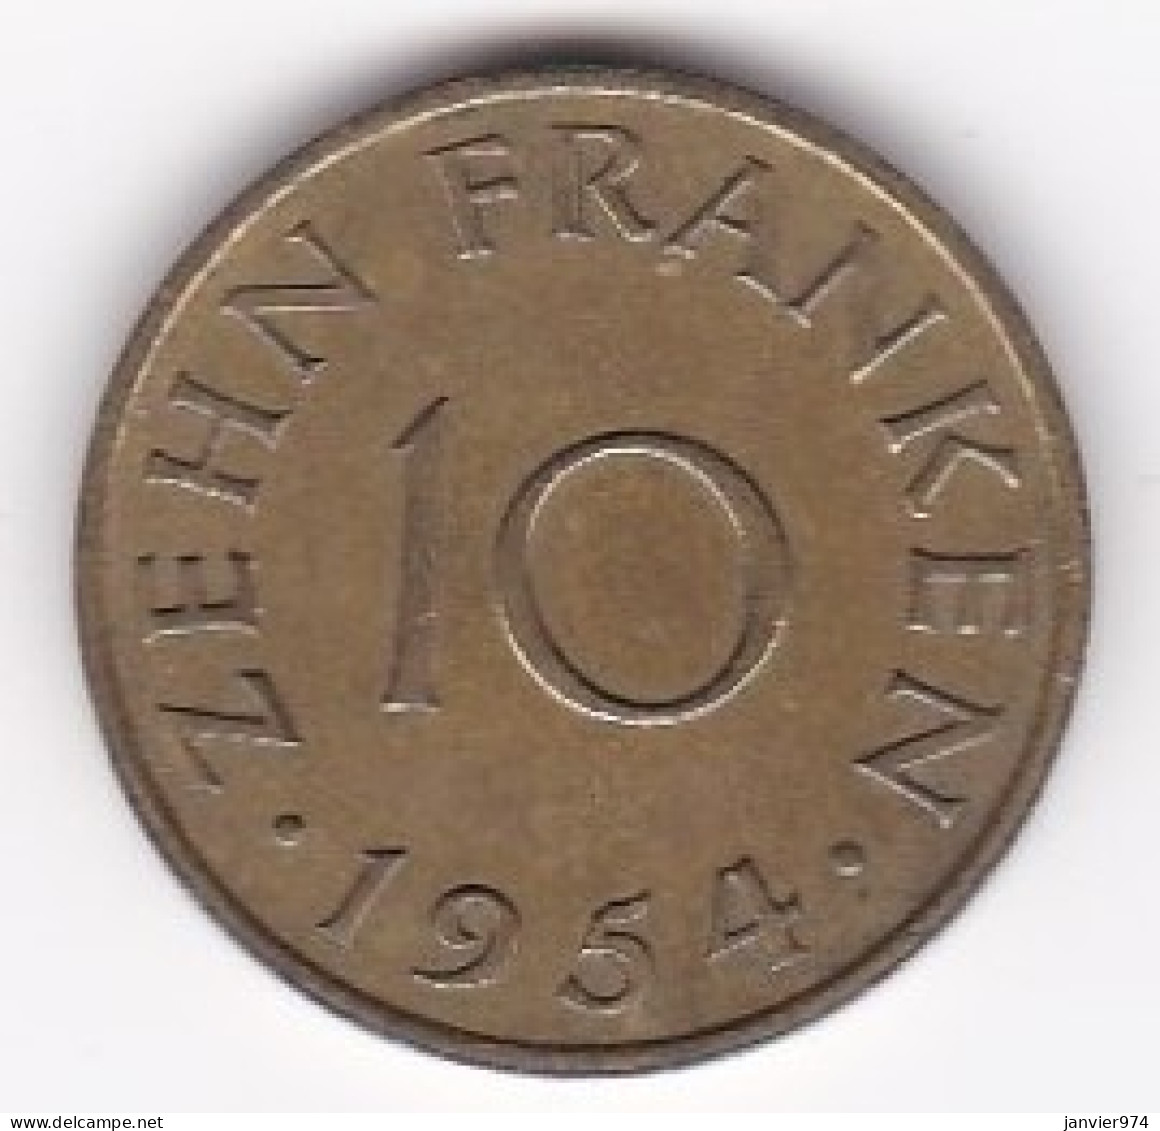 Sarre, Protectorat Français , 10 Franken 1954, Bronze-aluminium, KM# 1 - 10 Francos